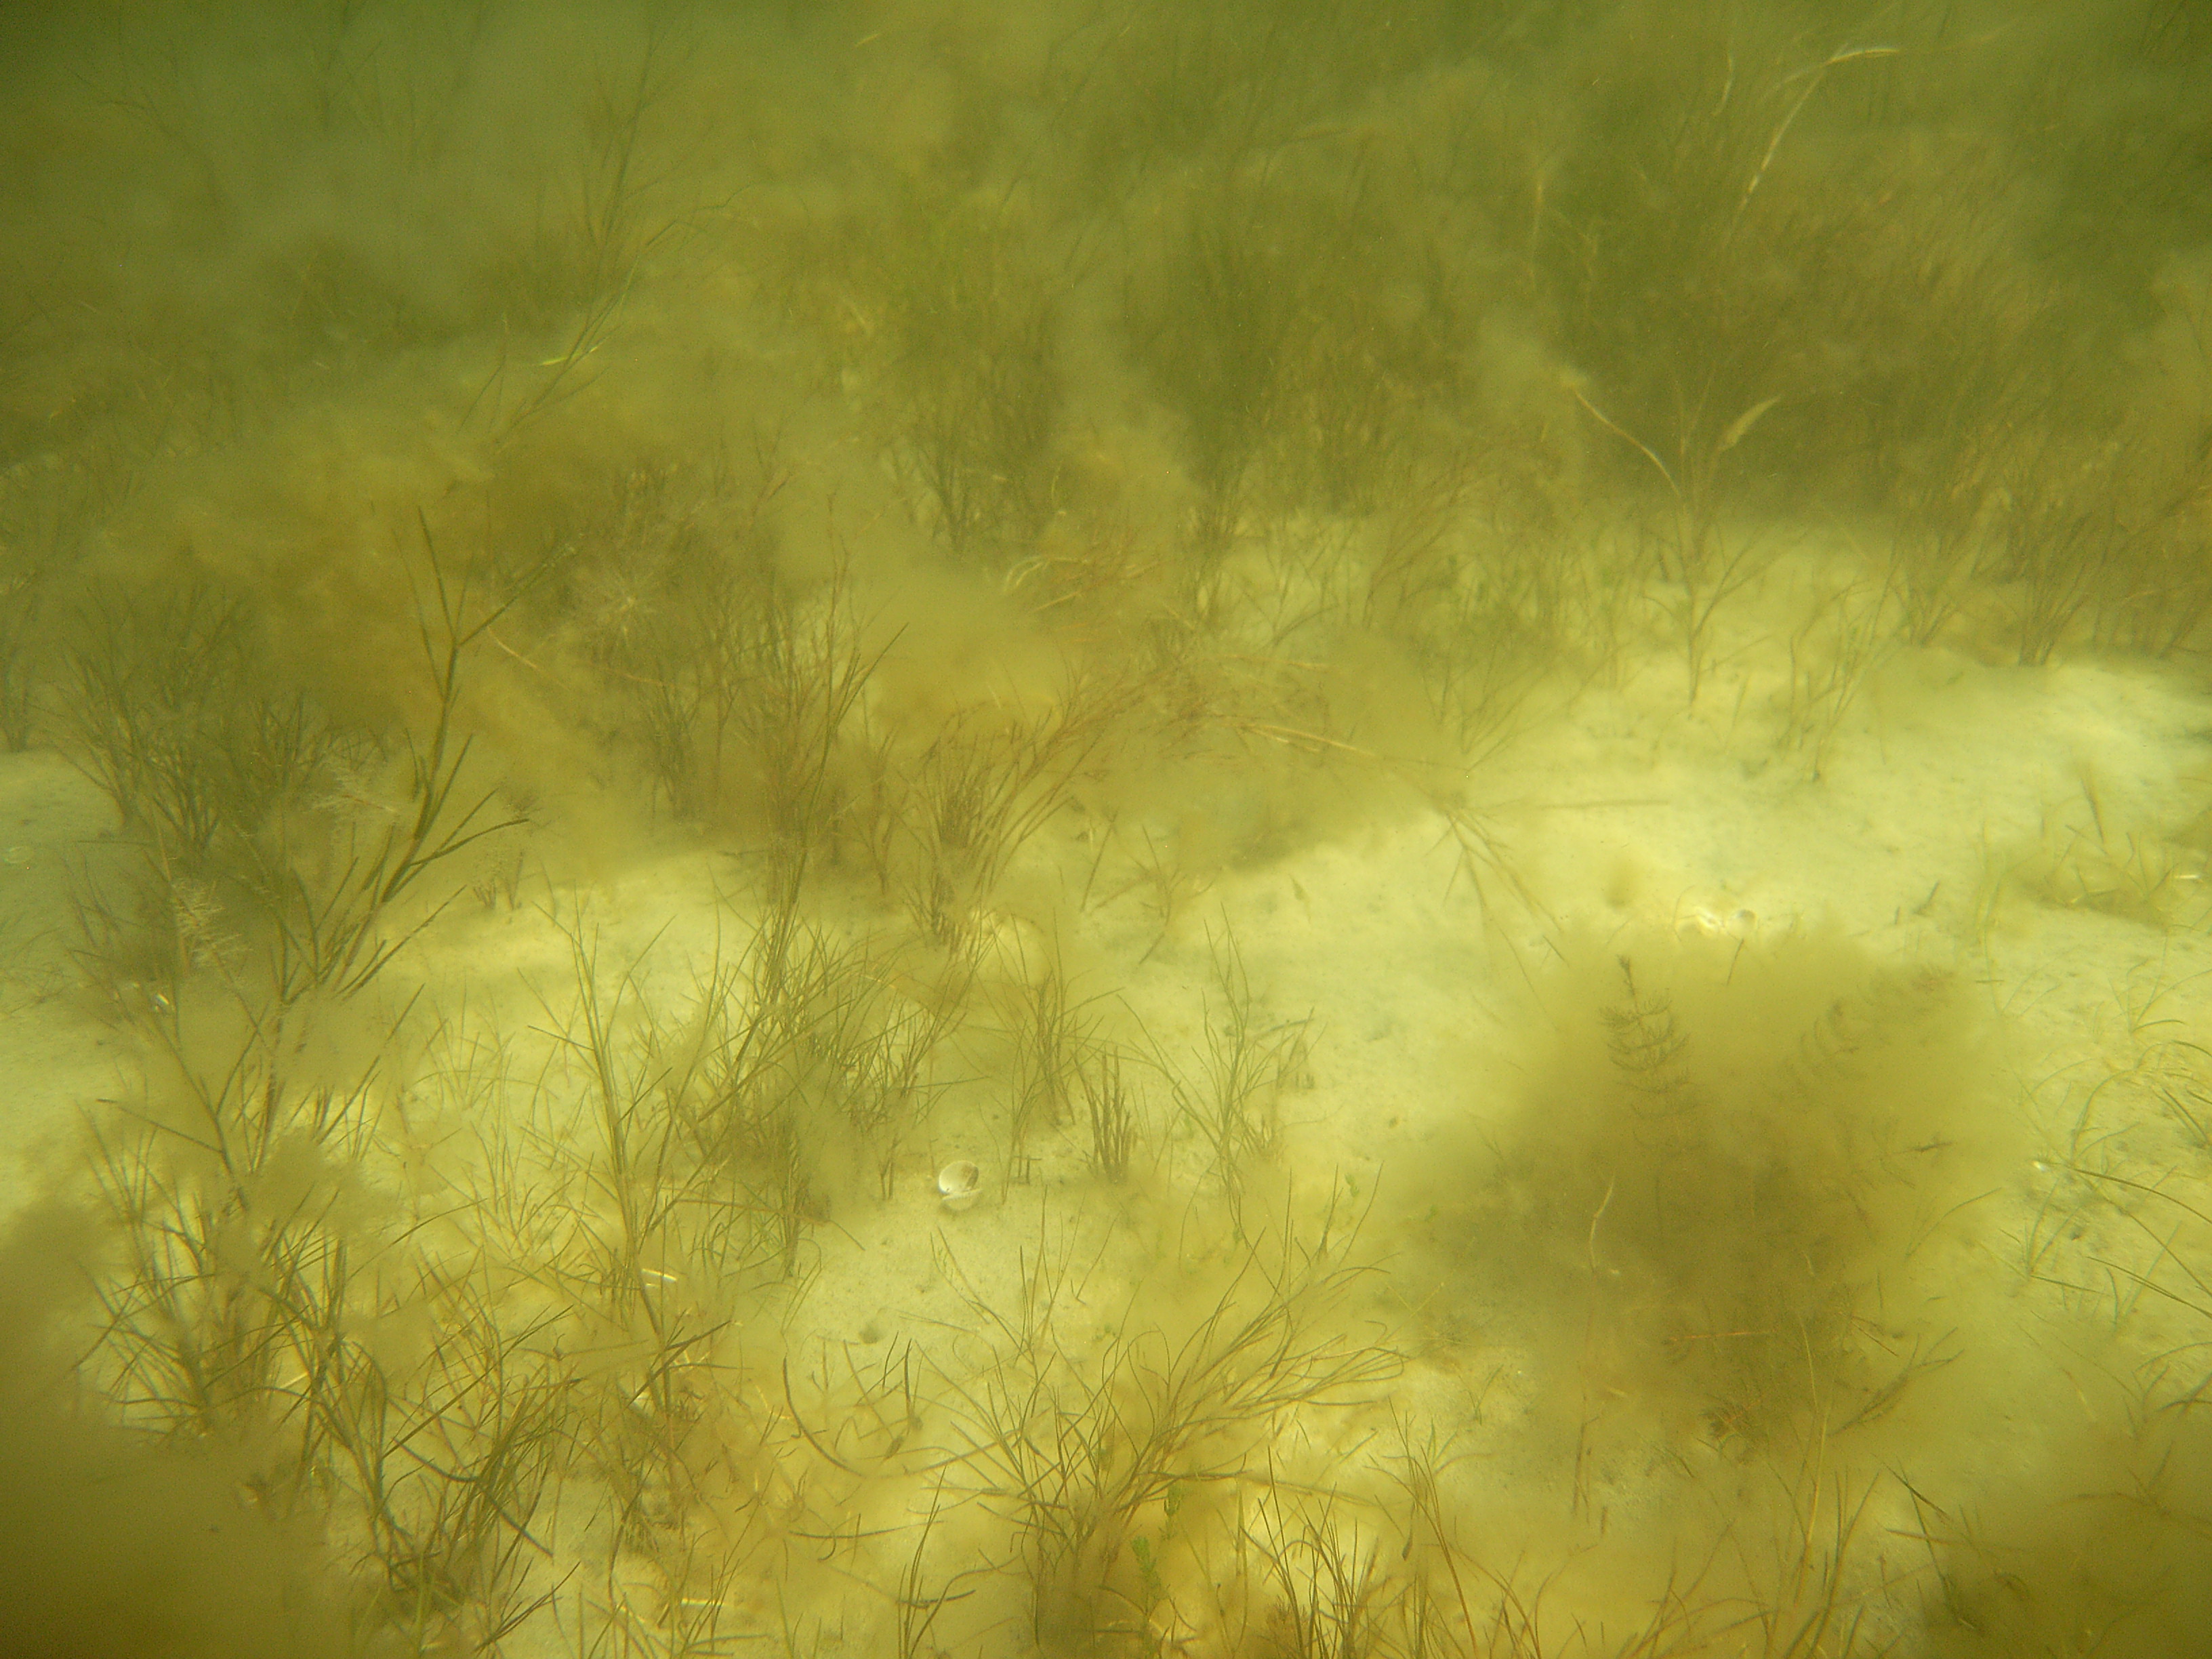 Na zdjęciu widać łąkę podwodną w zalewie Puckim składającą się z zielonych traw i wodorostów